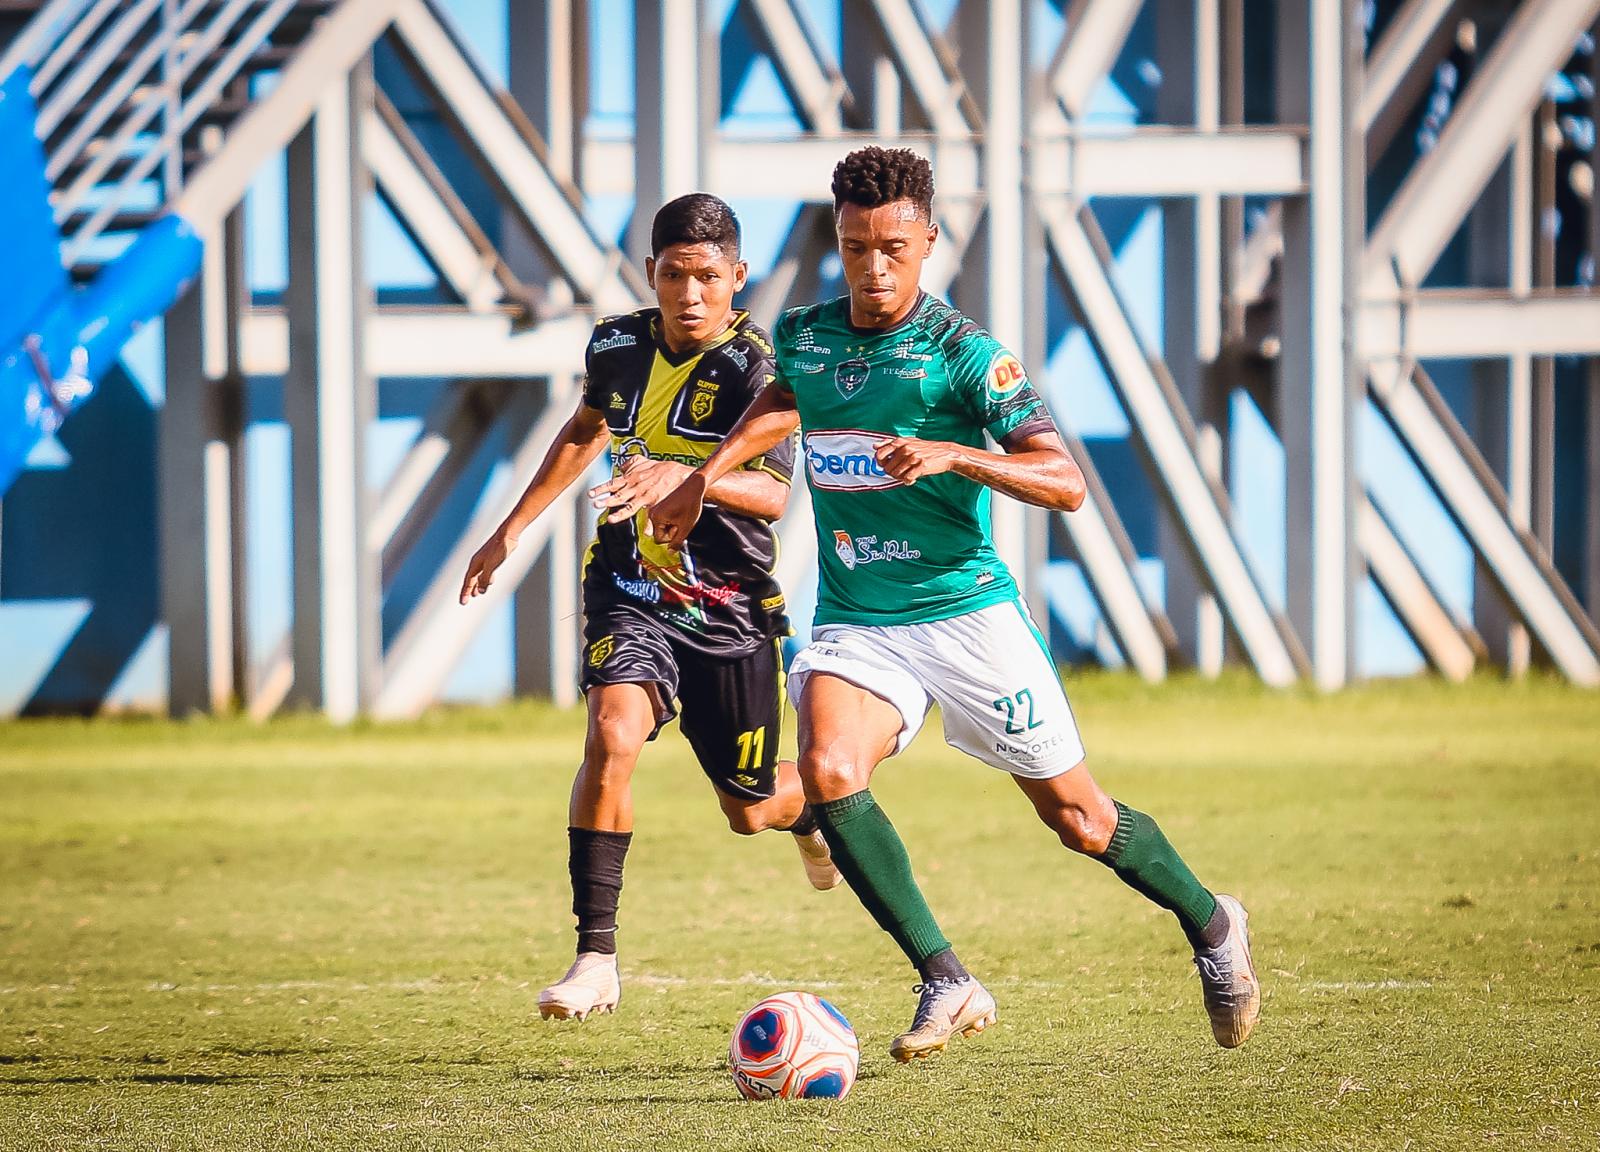 Serviço de jogo | Manaus vs Clipper| Sexta rodada Barezão 2022